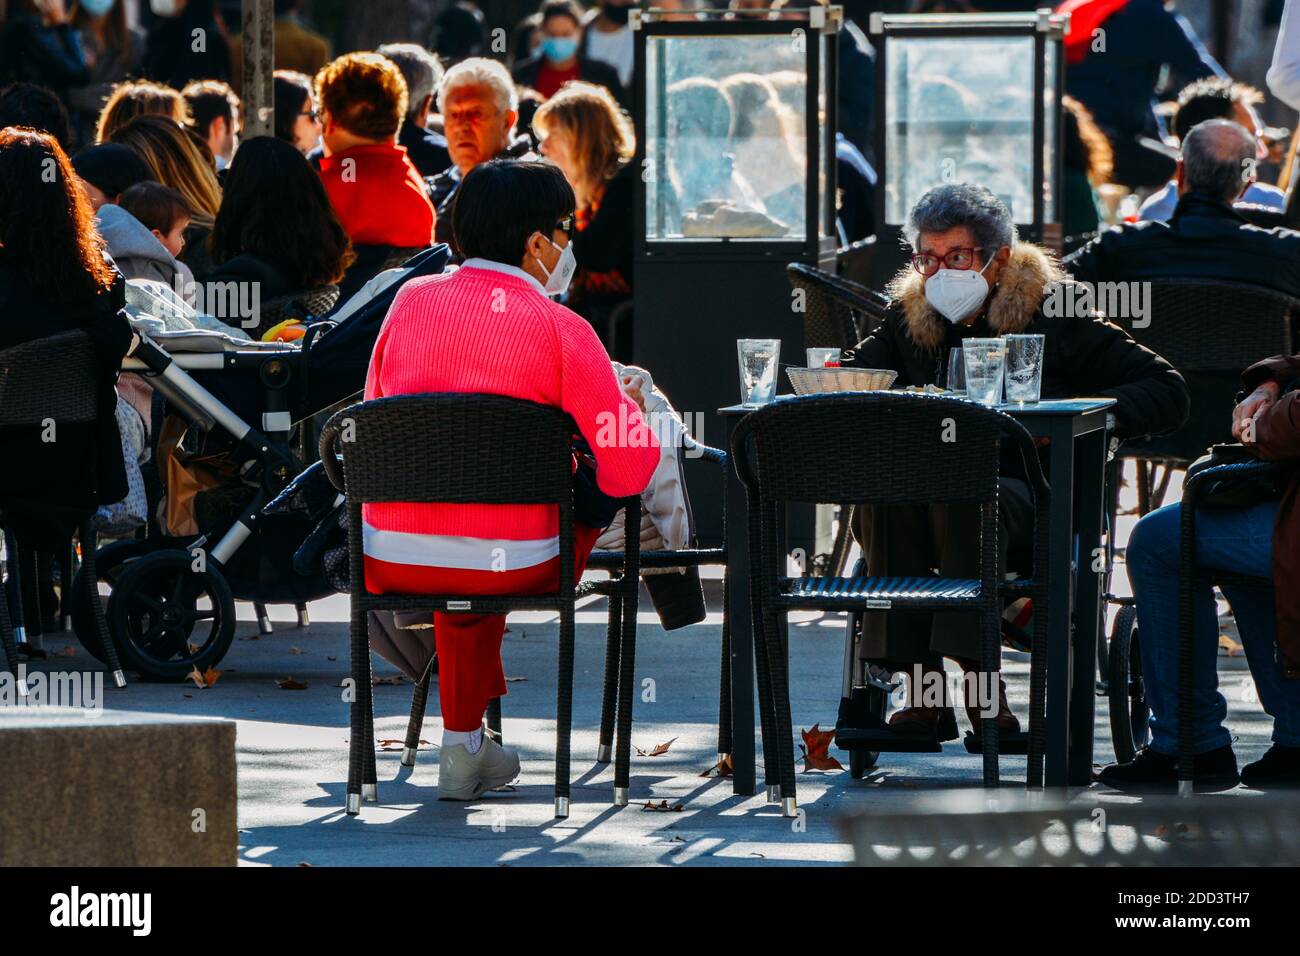 Madrid / Spanien - Nov 21, 2020: Die Menschen entspannen sich auf der Terrasse Café im beliebten Malasana-Viertel im Zentrum von Madrid, Spanien. Einige tragen Gesichtsmasken Stockfoto